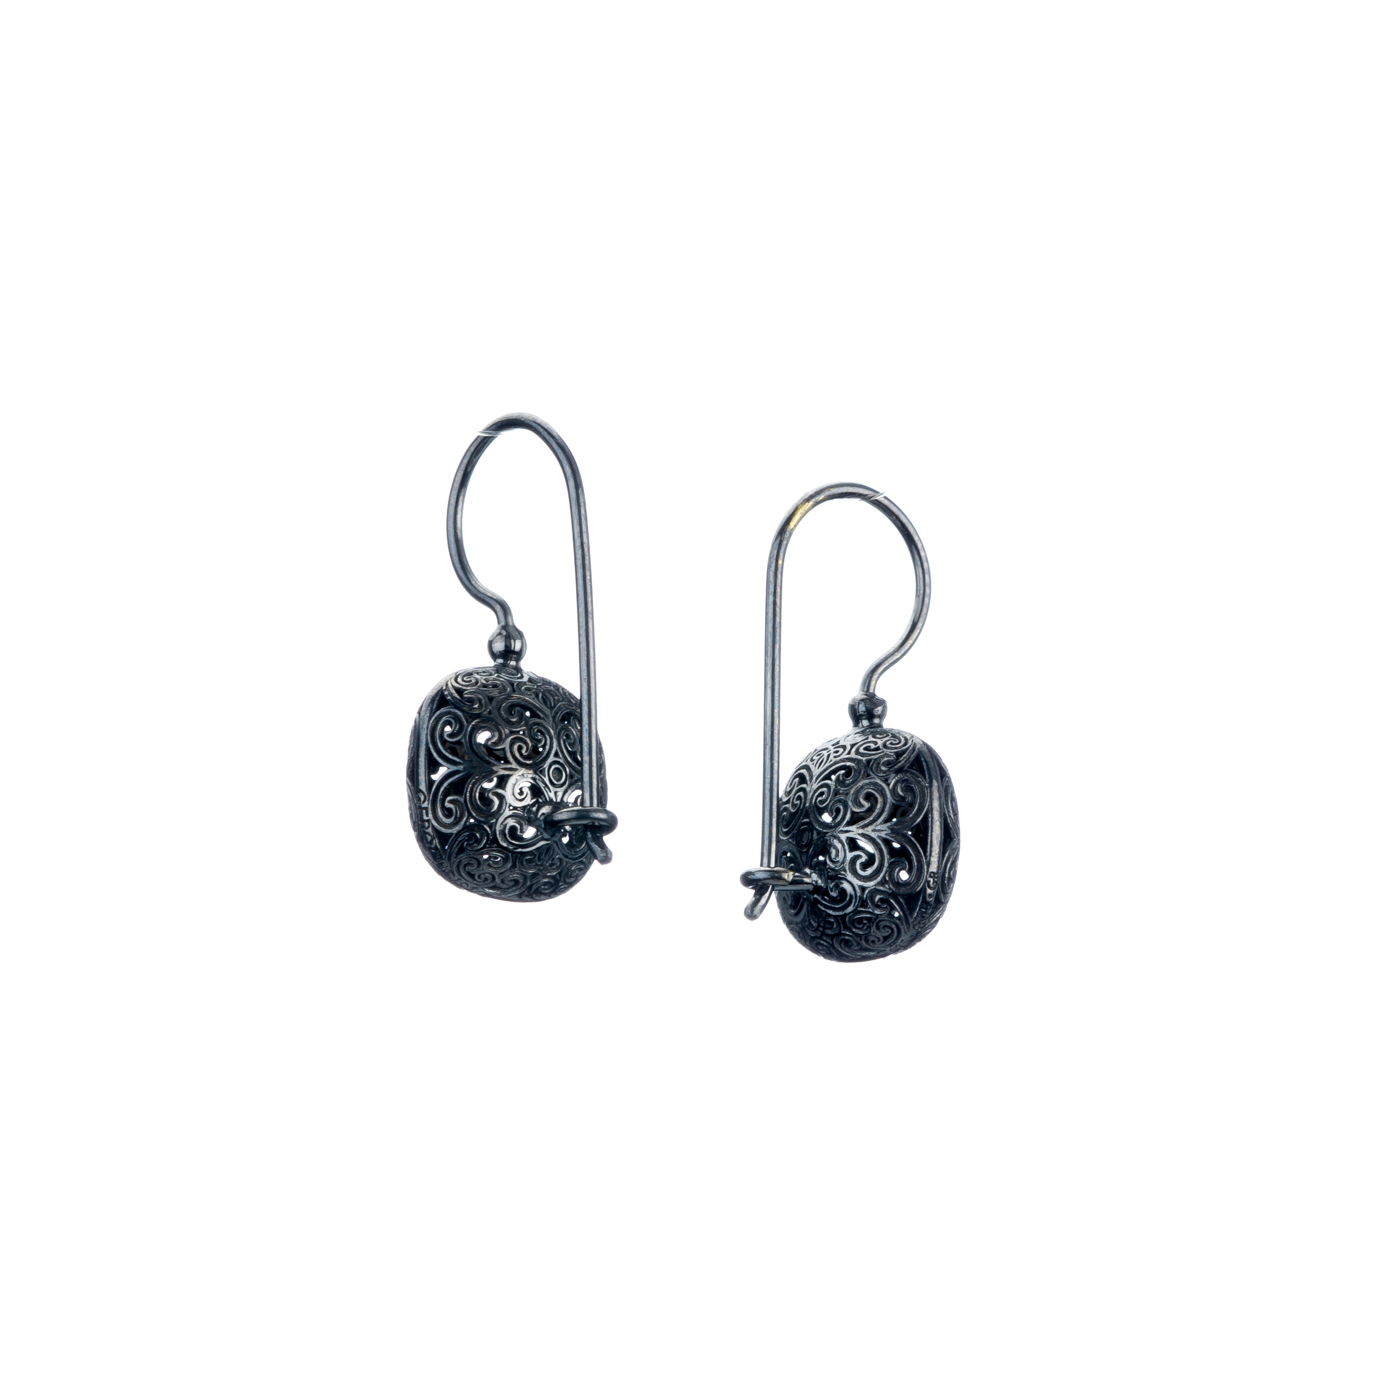 Kallisto cushion earrings in Black plated silver 925